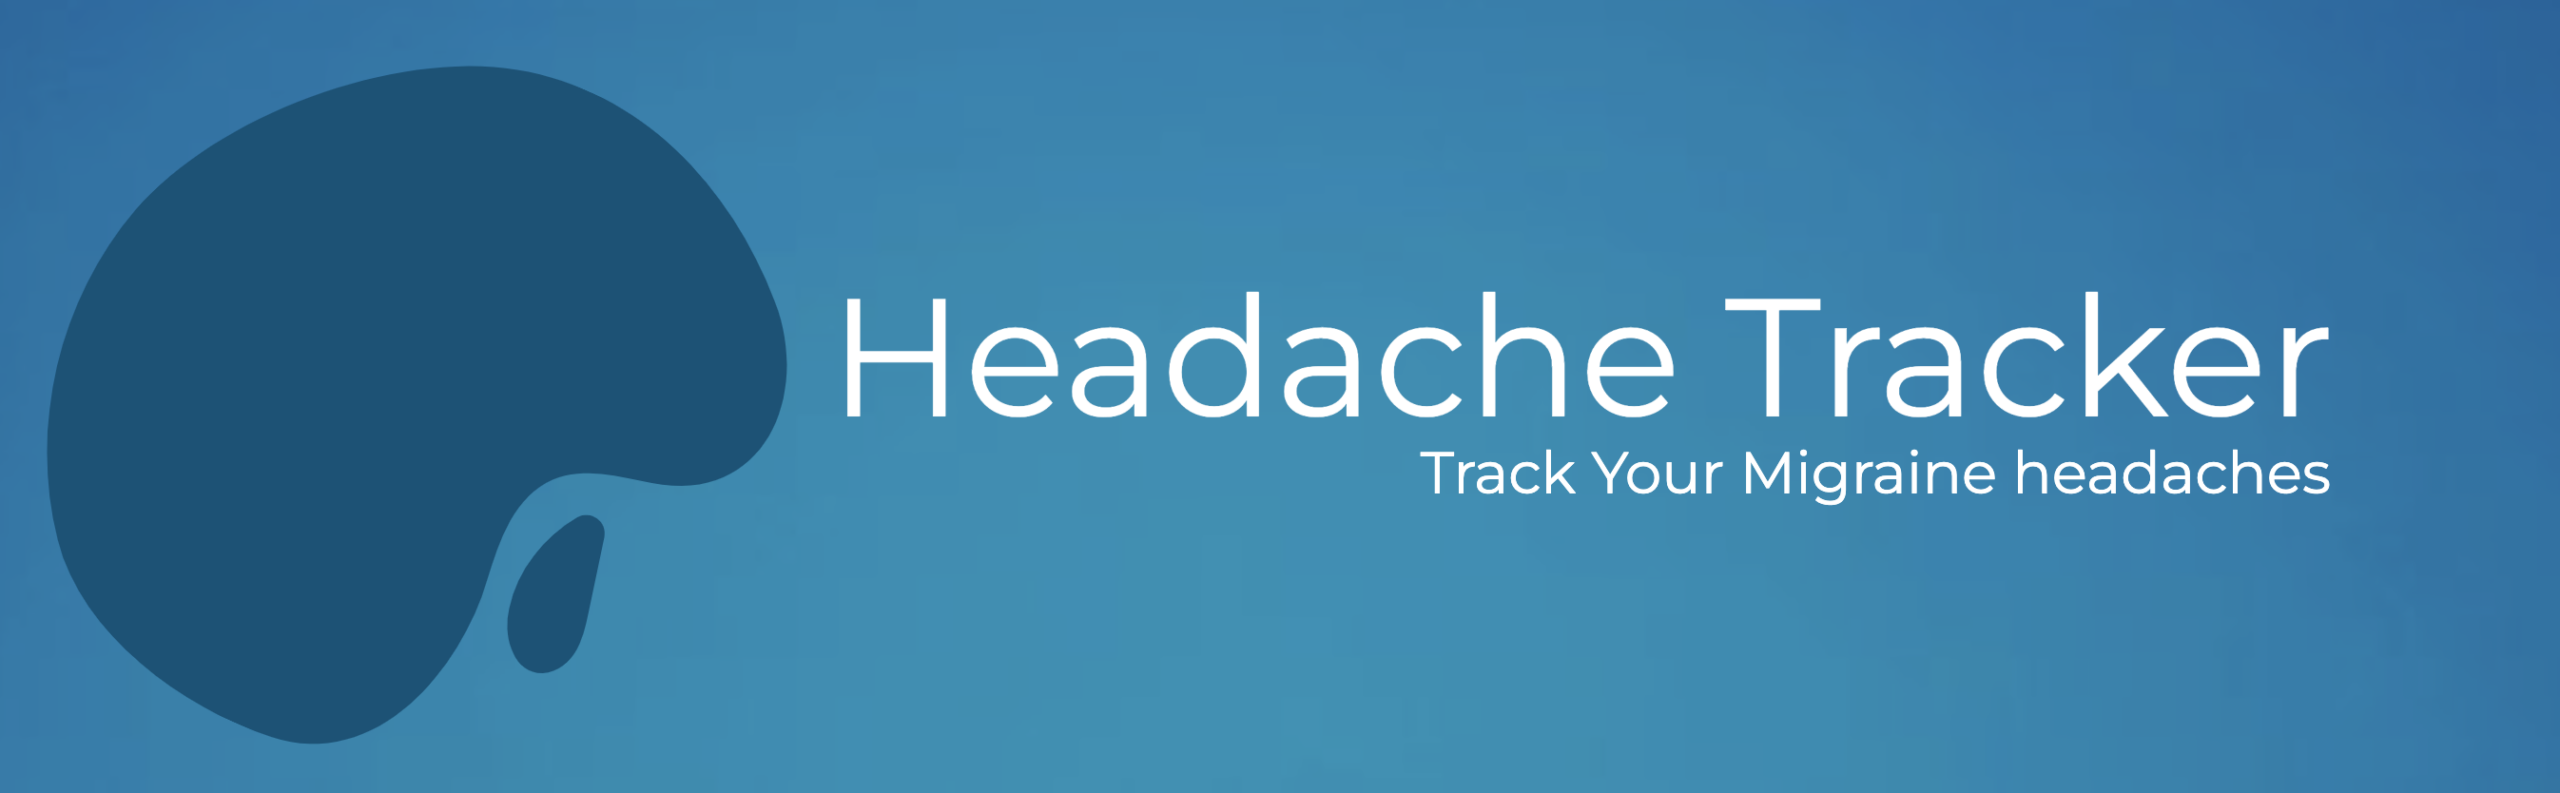 headache tracker